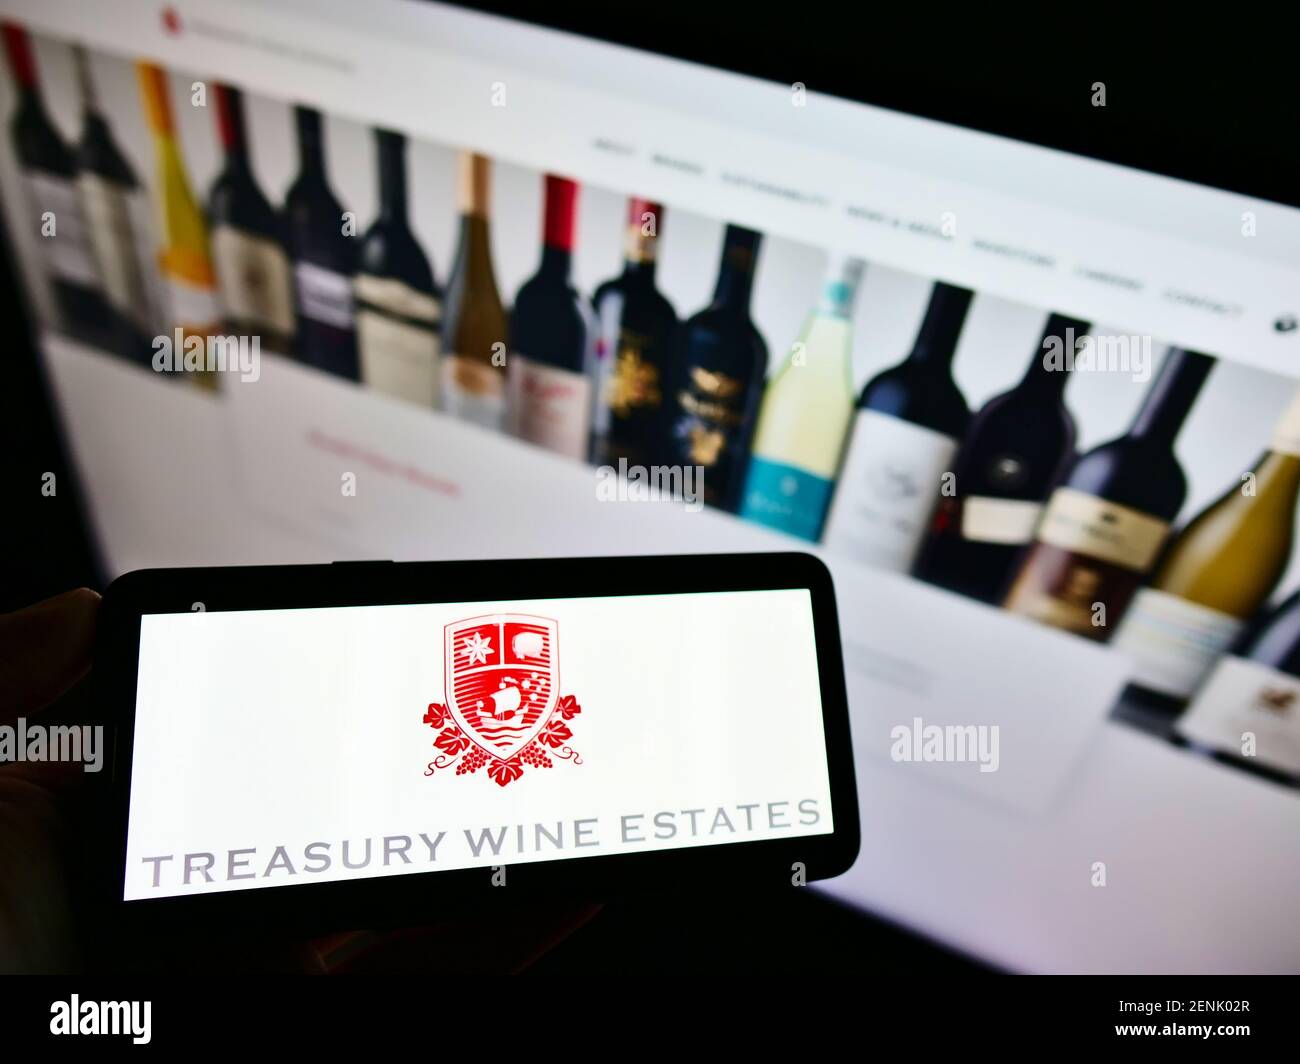 Persona che detiene il telefono cellulare con il logo aziendale della società vinicola australiana Treasury Wine Estates sullo schermo con il sito web. Mettere a fuoco il display del telefono. Foto Stock